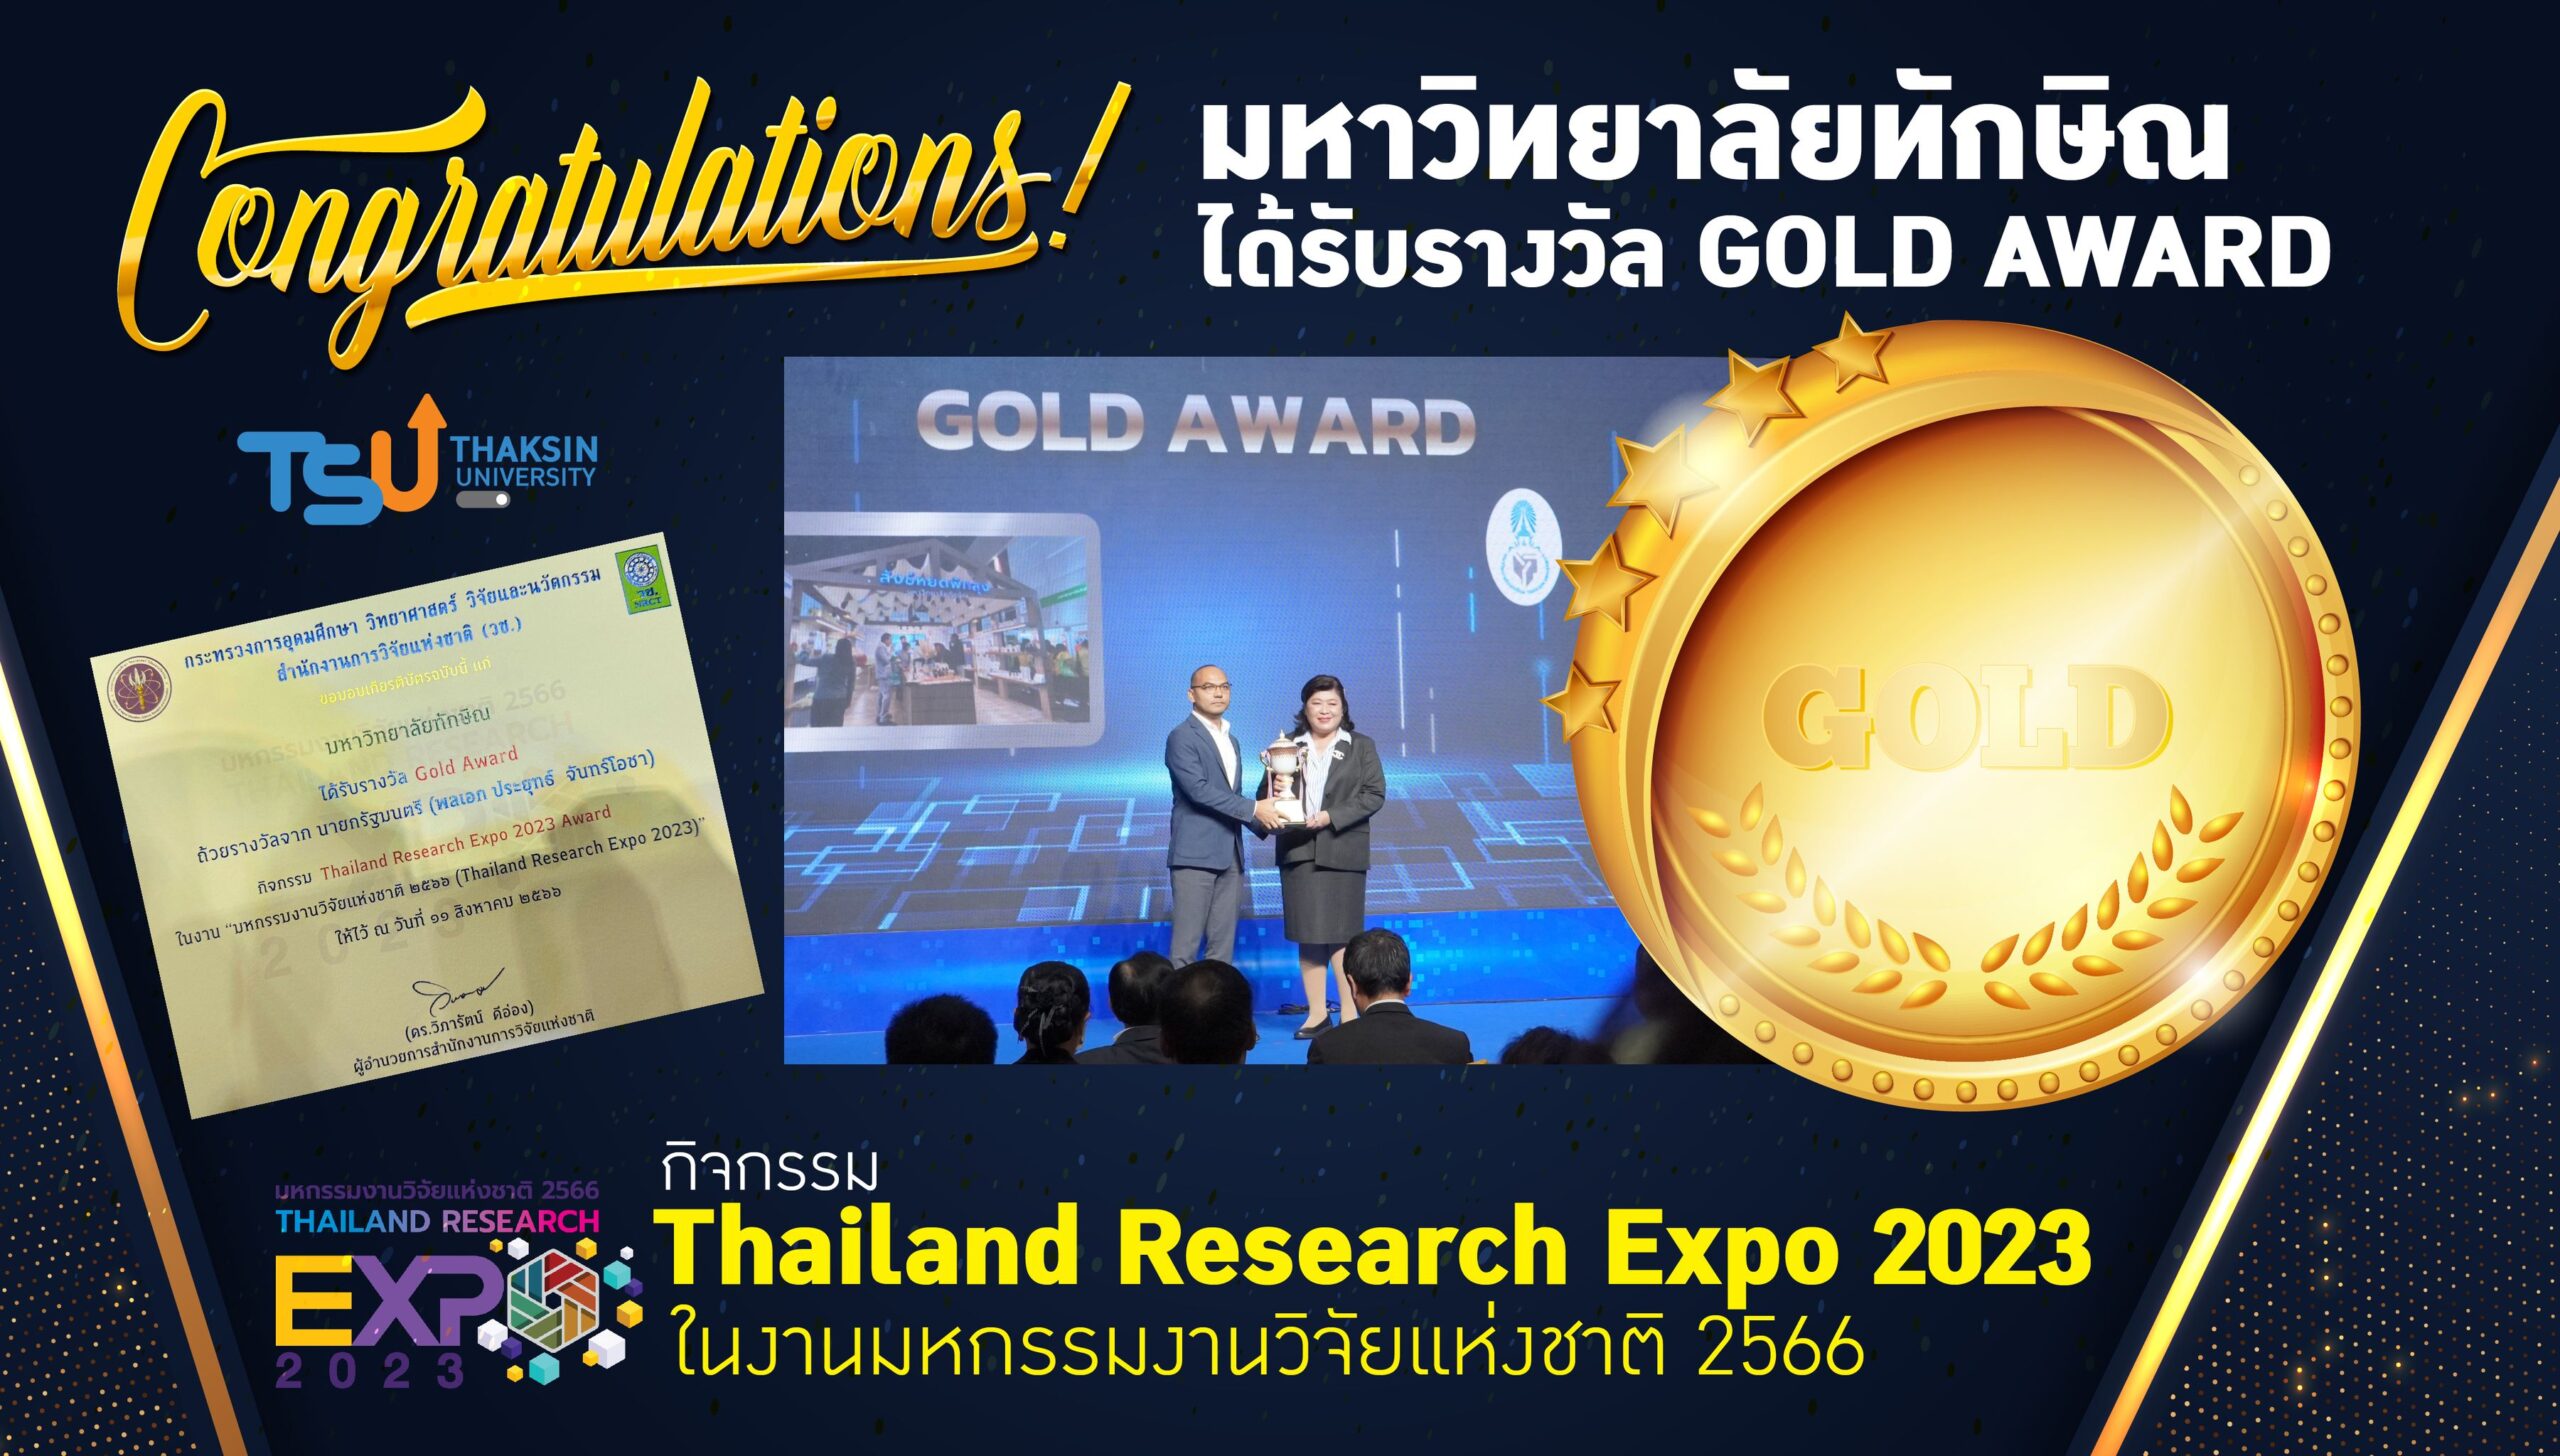 ม.ทักษิณ คว้ารางวัล Gold Award พร้อมเงินรางวัล 70,000 บาท ในงาน “มหกรรมงานวิจัยแห่งชาติ 2566” (Thailand Research Expo 2023)